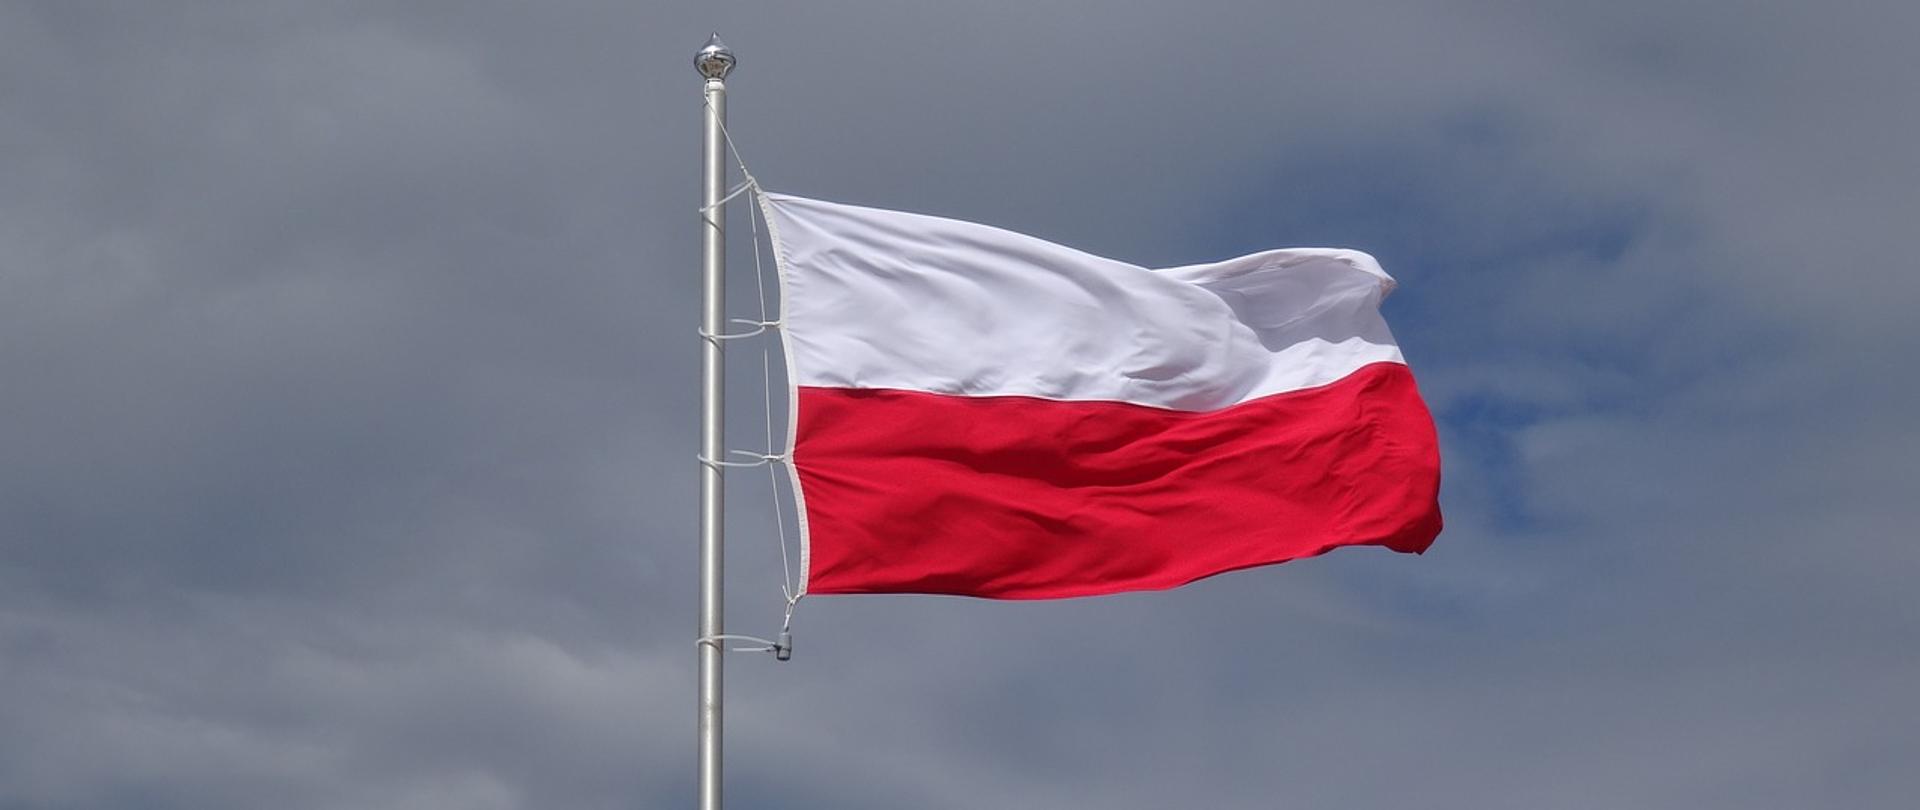 Zdjęcie przedstawia biało – czerwoną flagę Polski zawieszoną na białym maszcie powiewającą na wietrze. Tło zdjęcia stanowi niebo w kolorze niebieskim z białymi obłokami. 